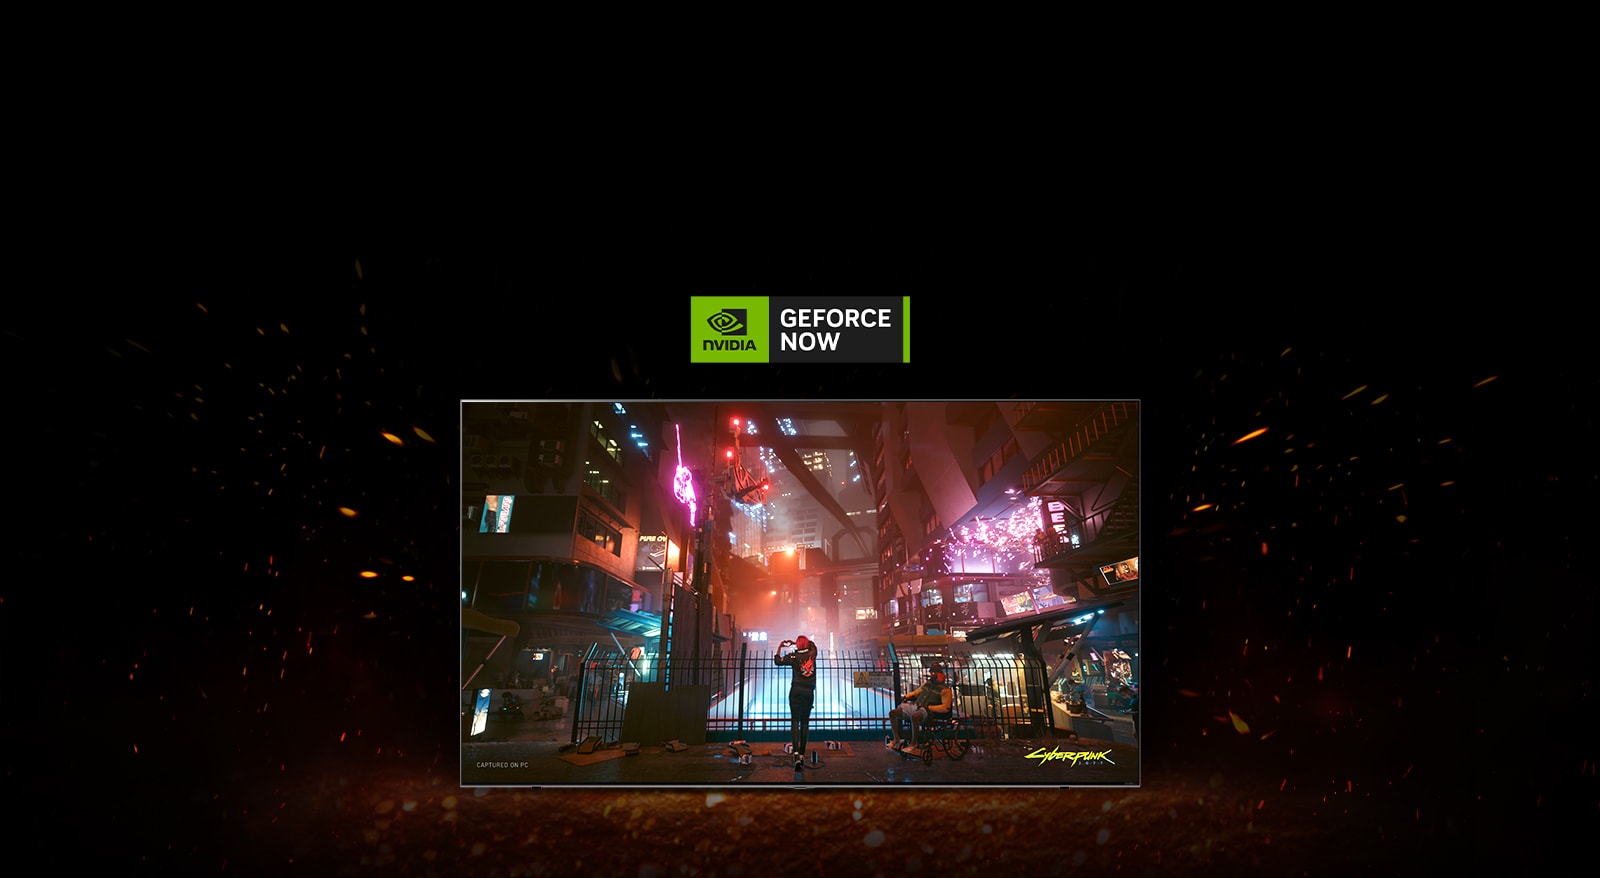 Wokół telewizora tańczą płomienie, a na ekranie widać kadr z gry Cyberpunk. Na górze telewizora znajduje się logo Geforce NOW.